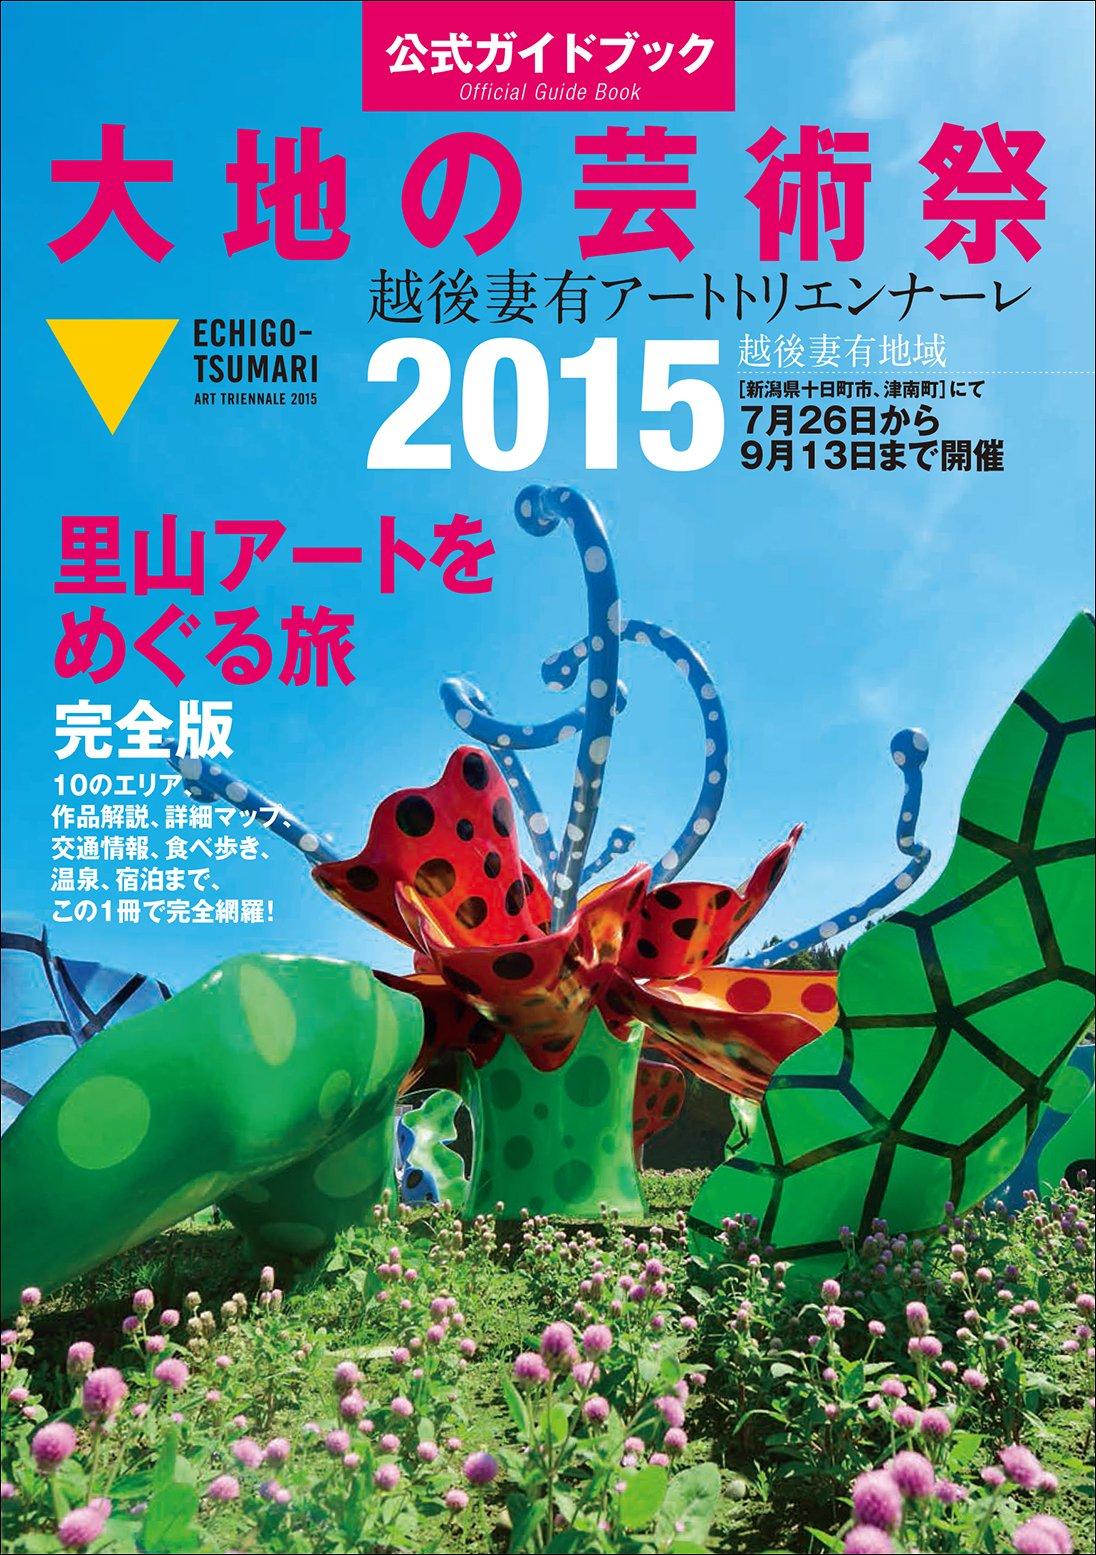 Official guide book Echigo-Tsumari Art Triannale 2015